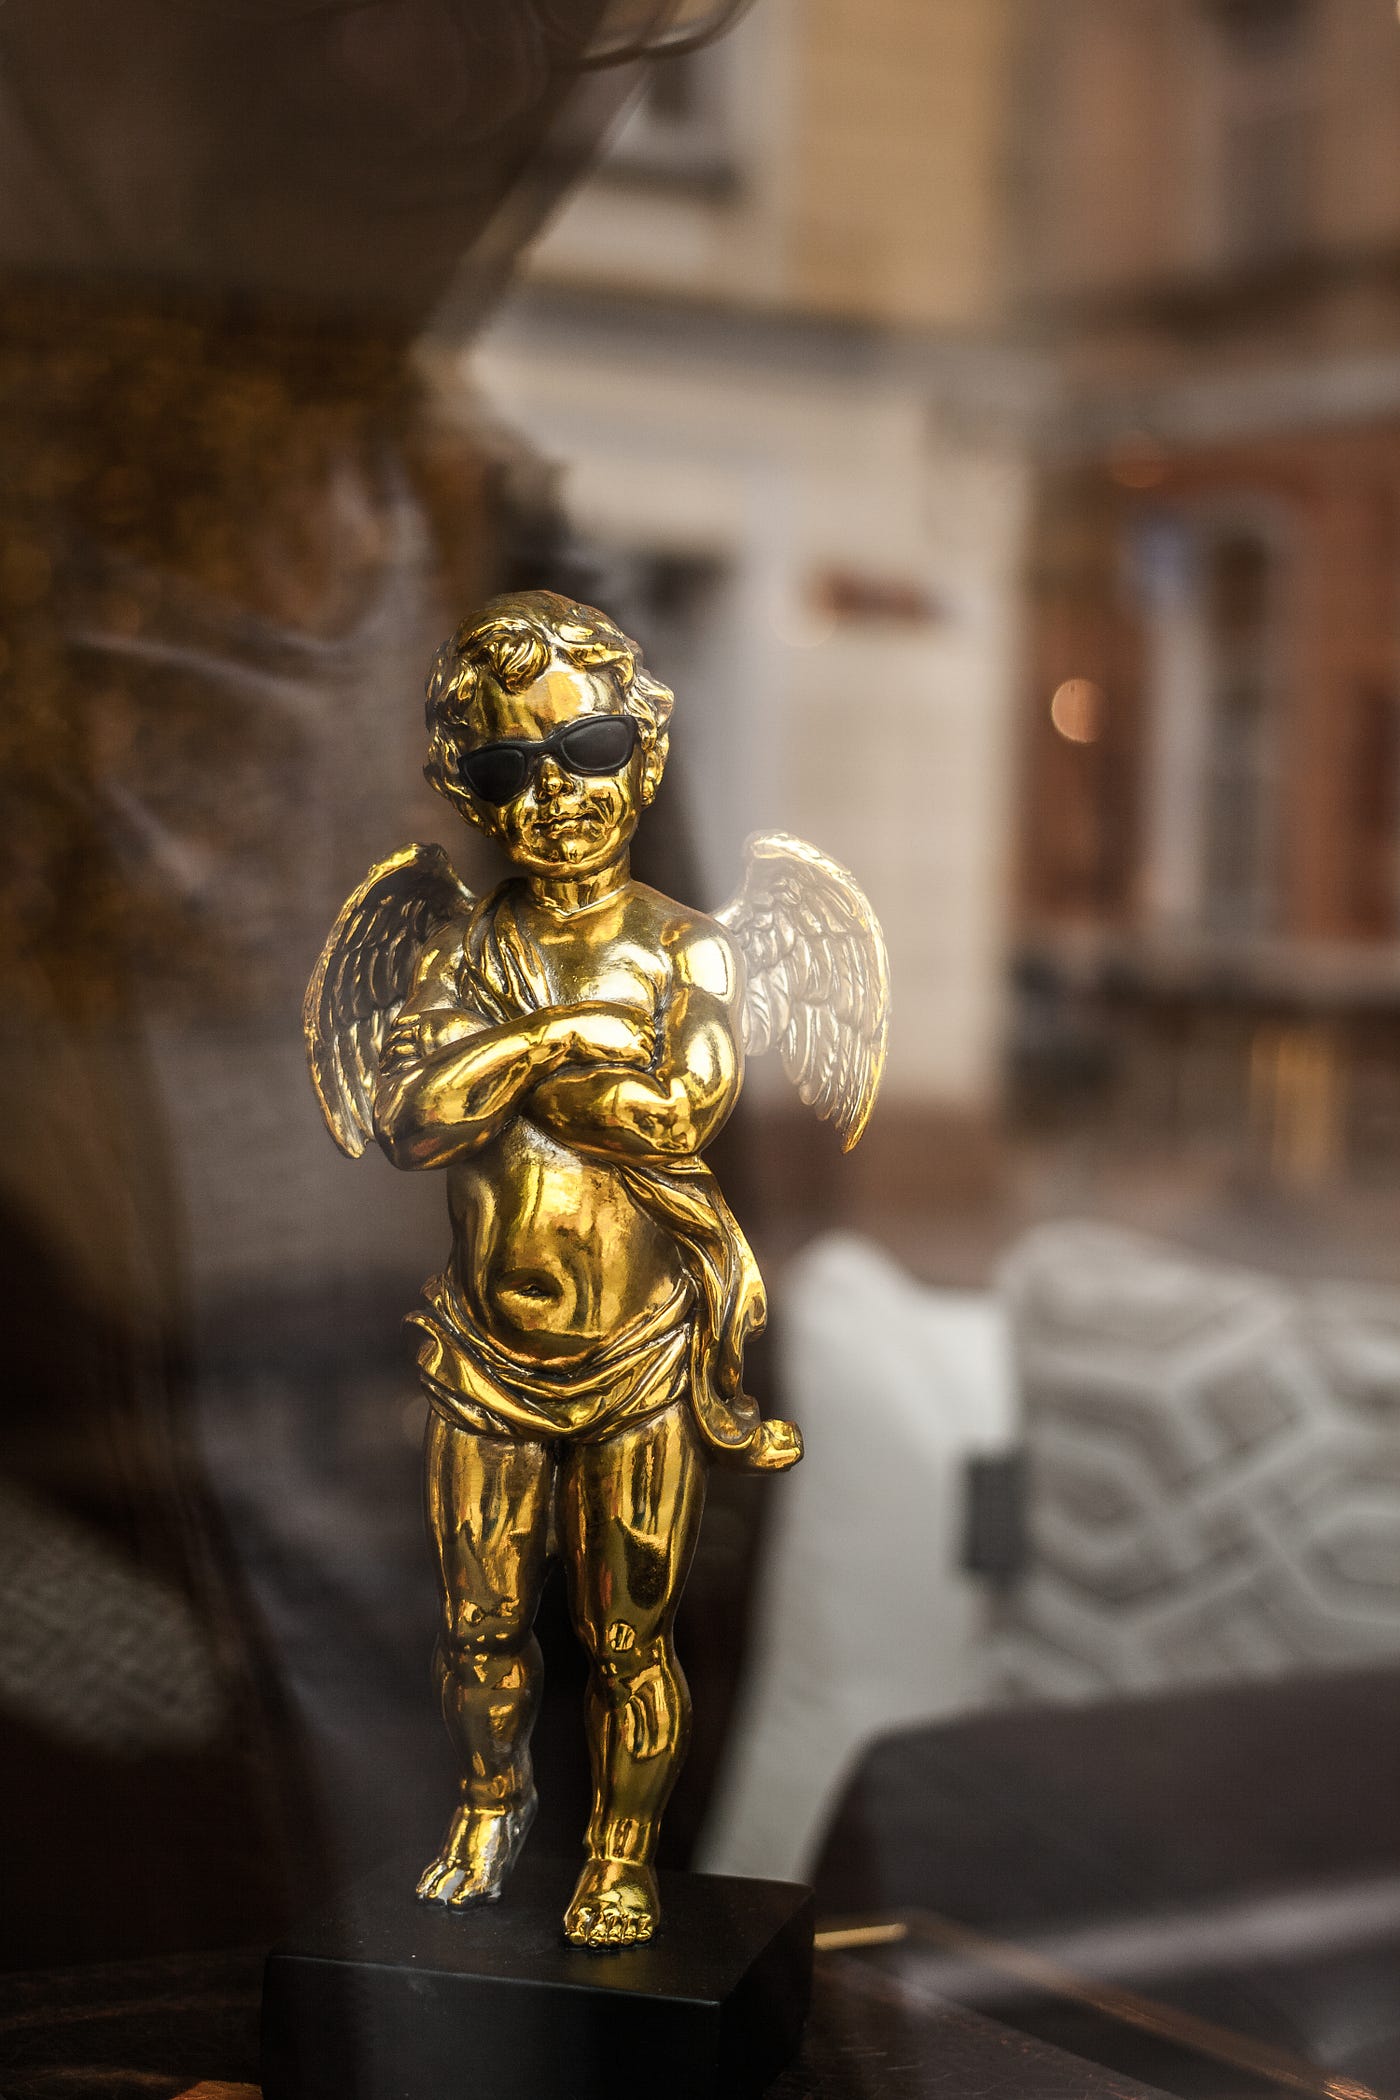 Bronze angel statute with sunglasses